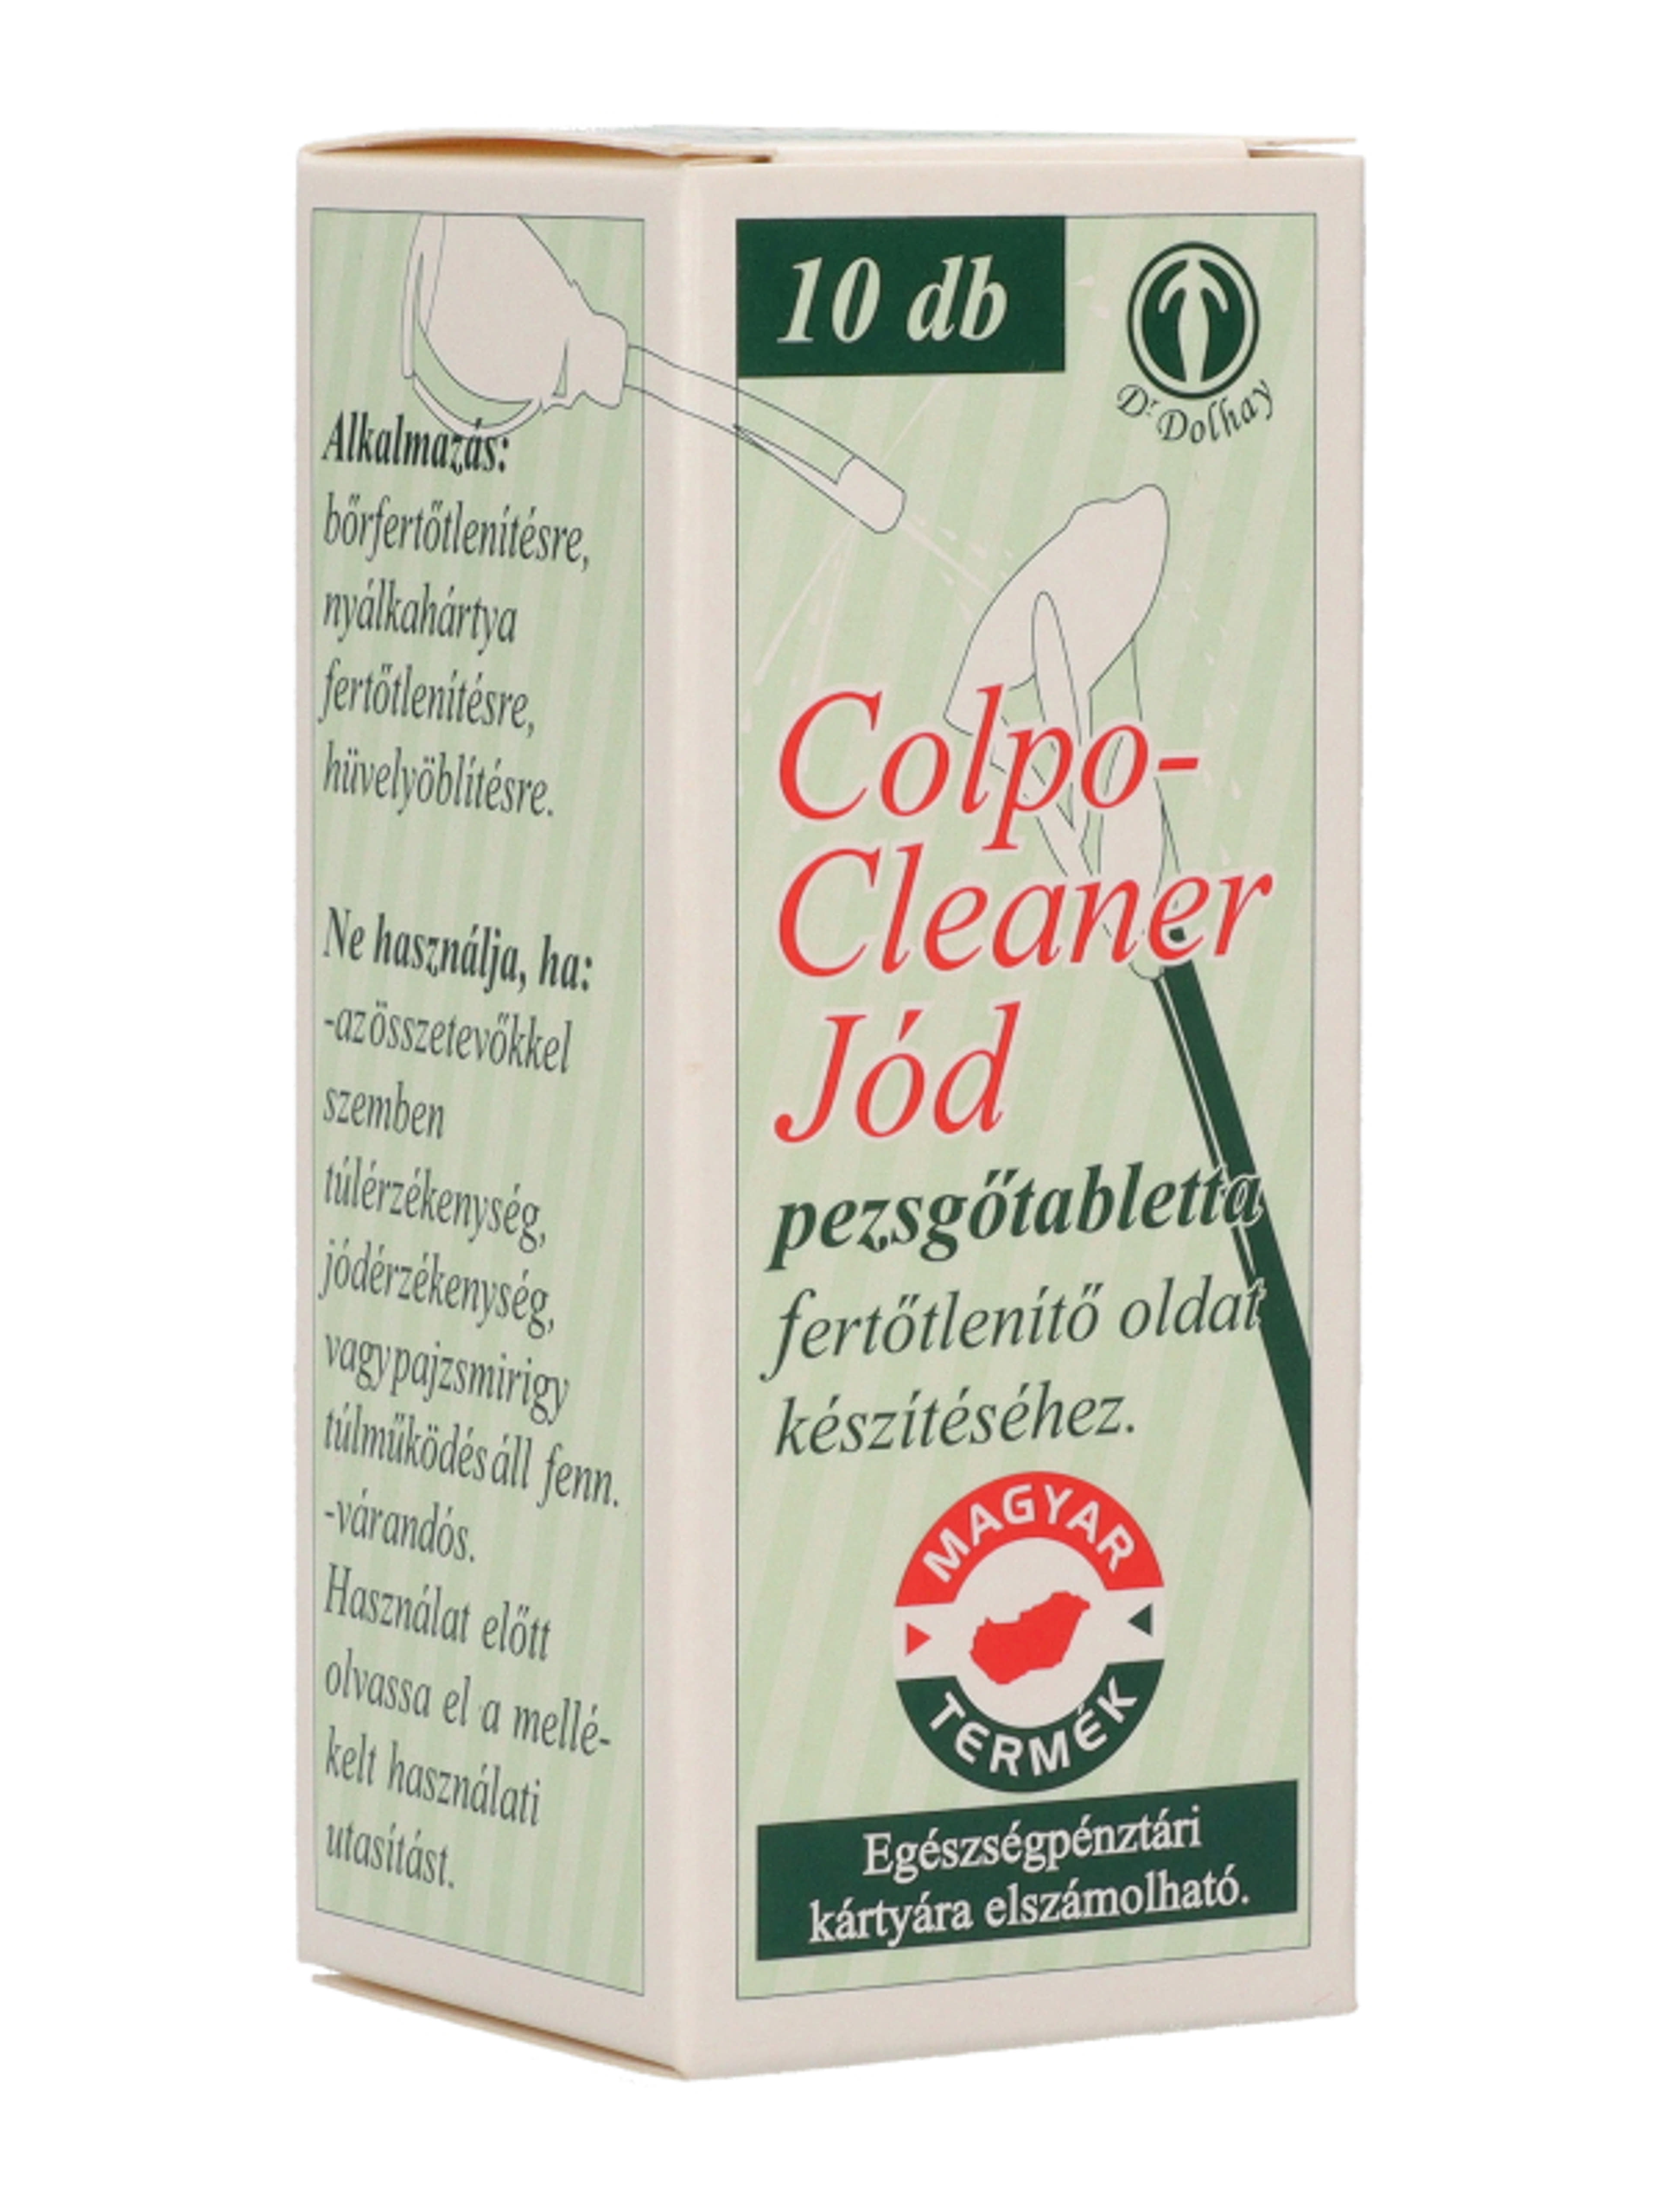 Colpo-Cleaner jód pezsgőtabletta - 10 db-5